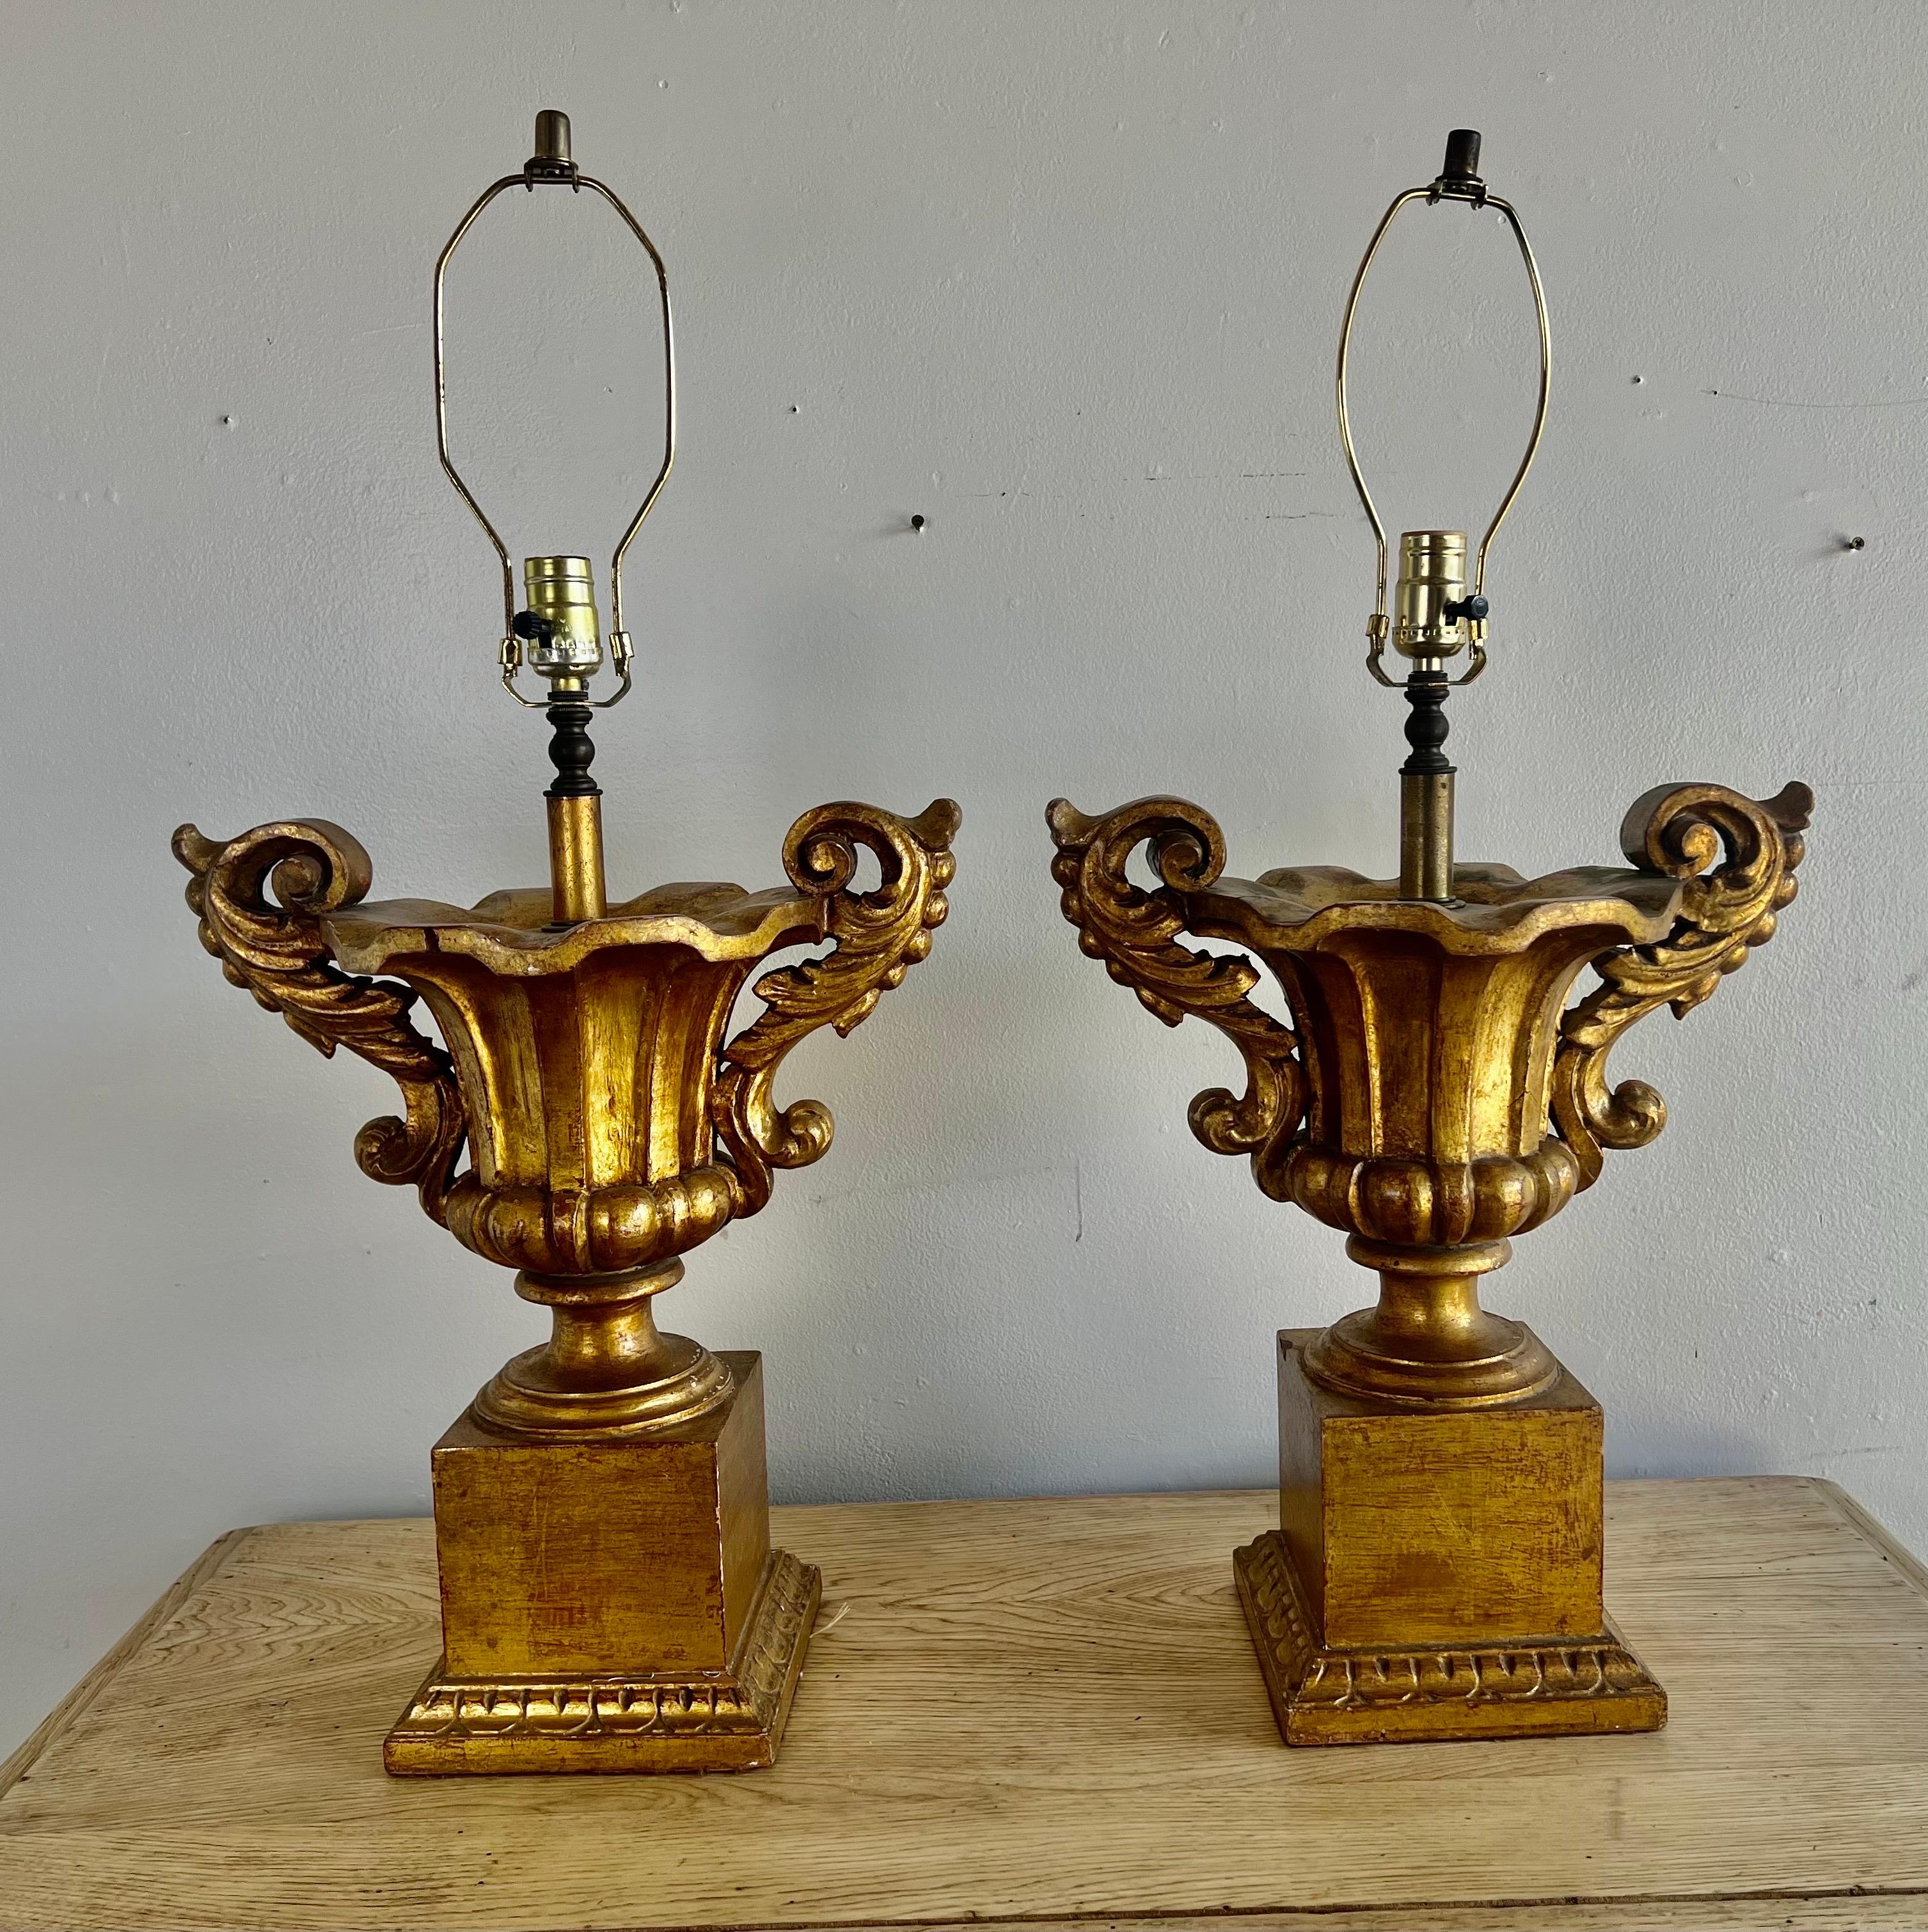 Paire de lampes urnes italiennes de style néoclassique en bois doré avec des feuilles d'acanthe sculptées.  Les urnes reposent sur des socles.  Les lampes sont toutes deux en état de marche.